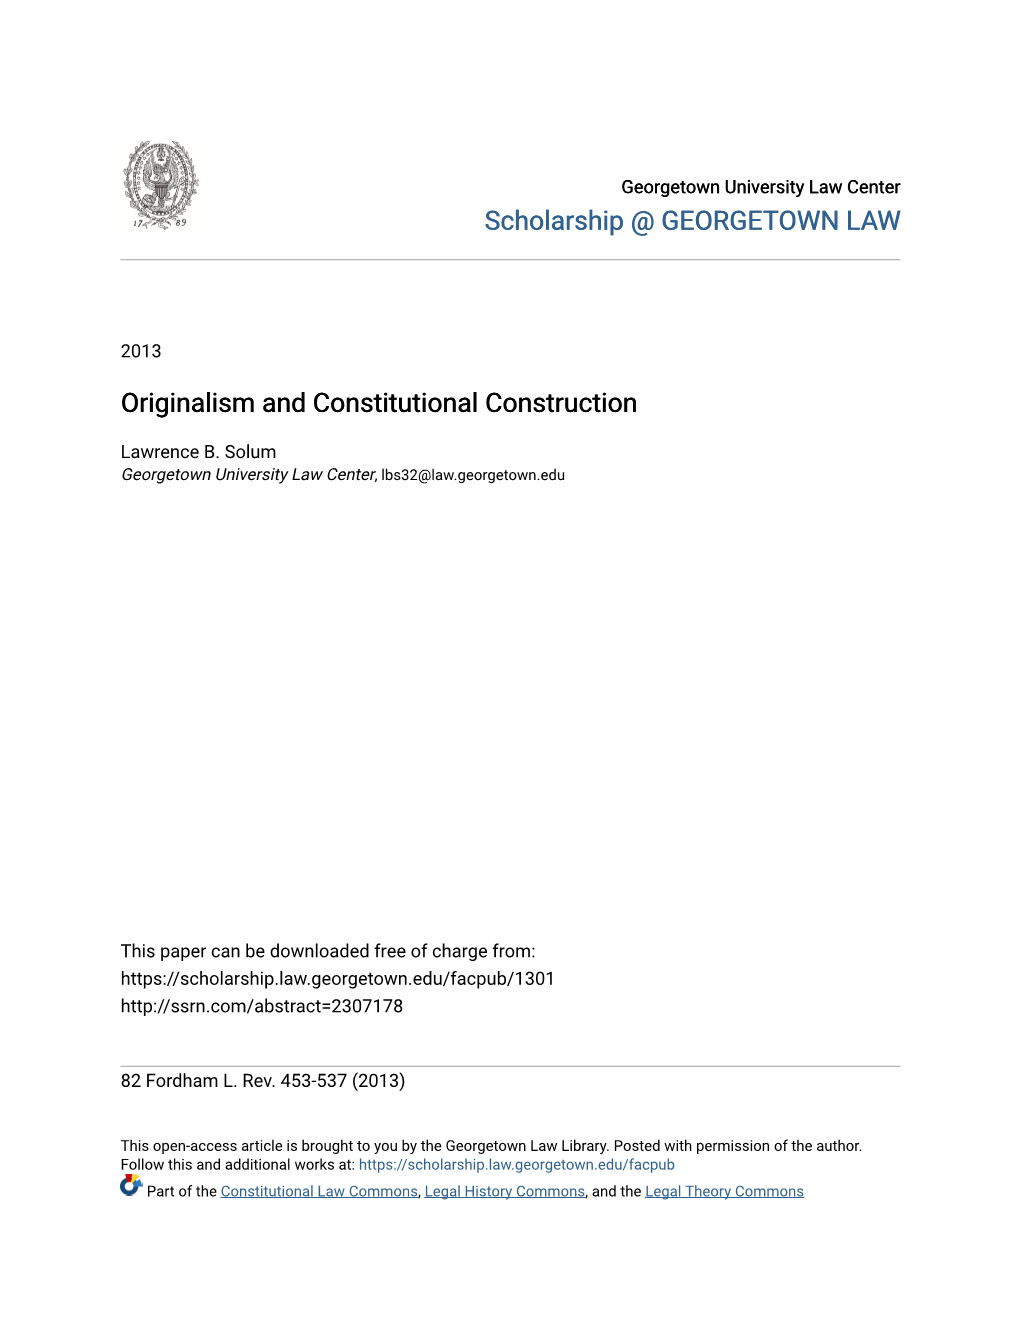 Originalism and Constitutional Construction